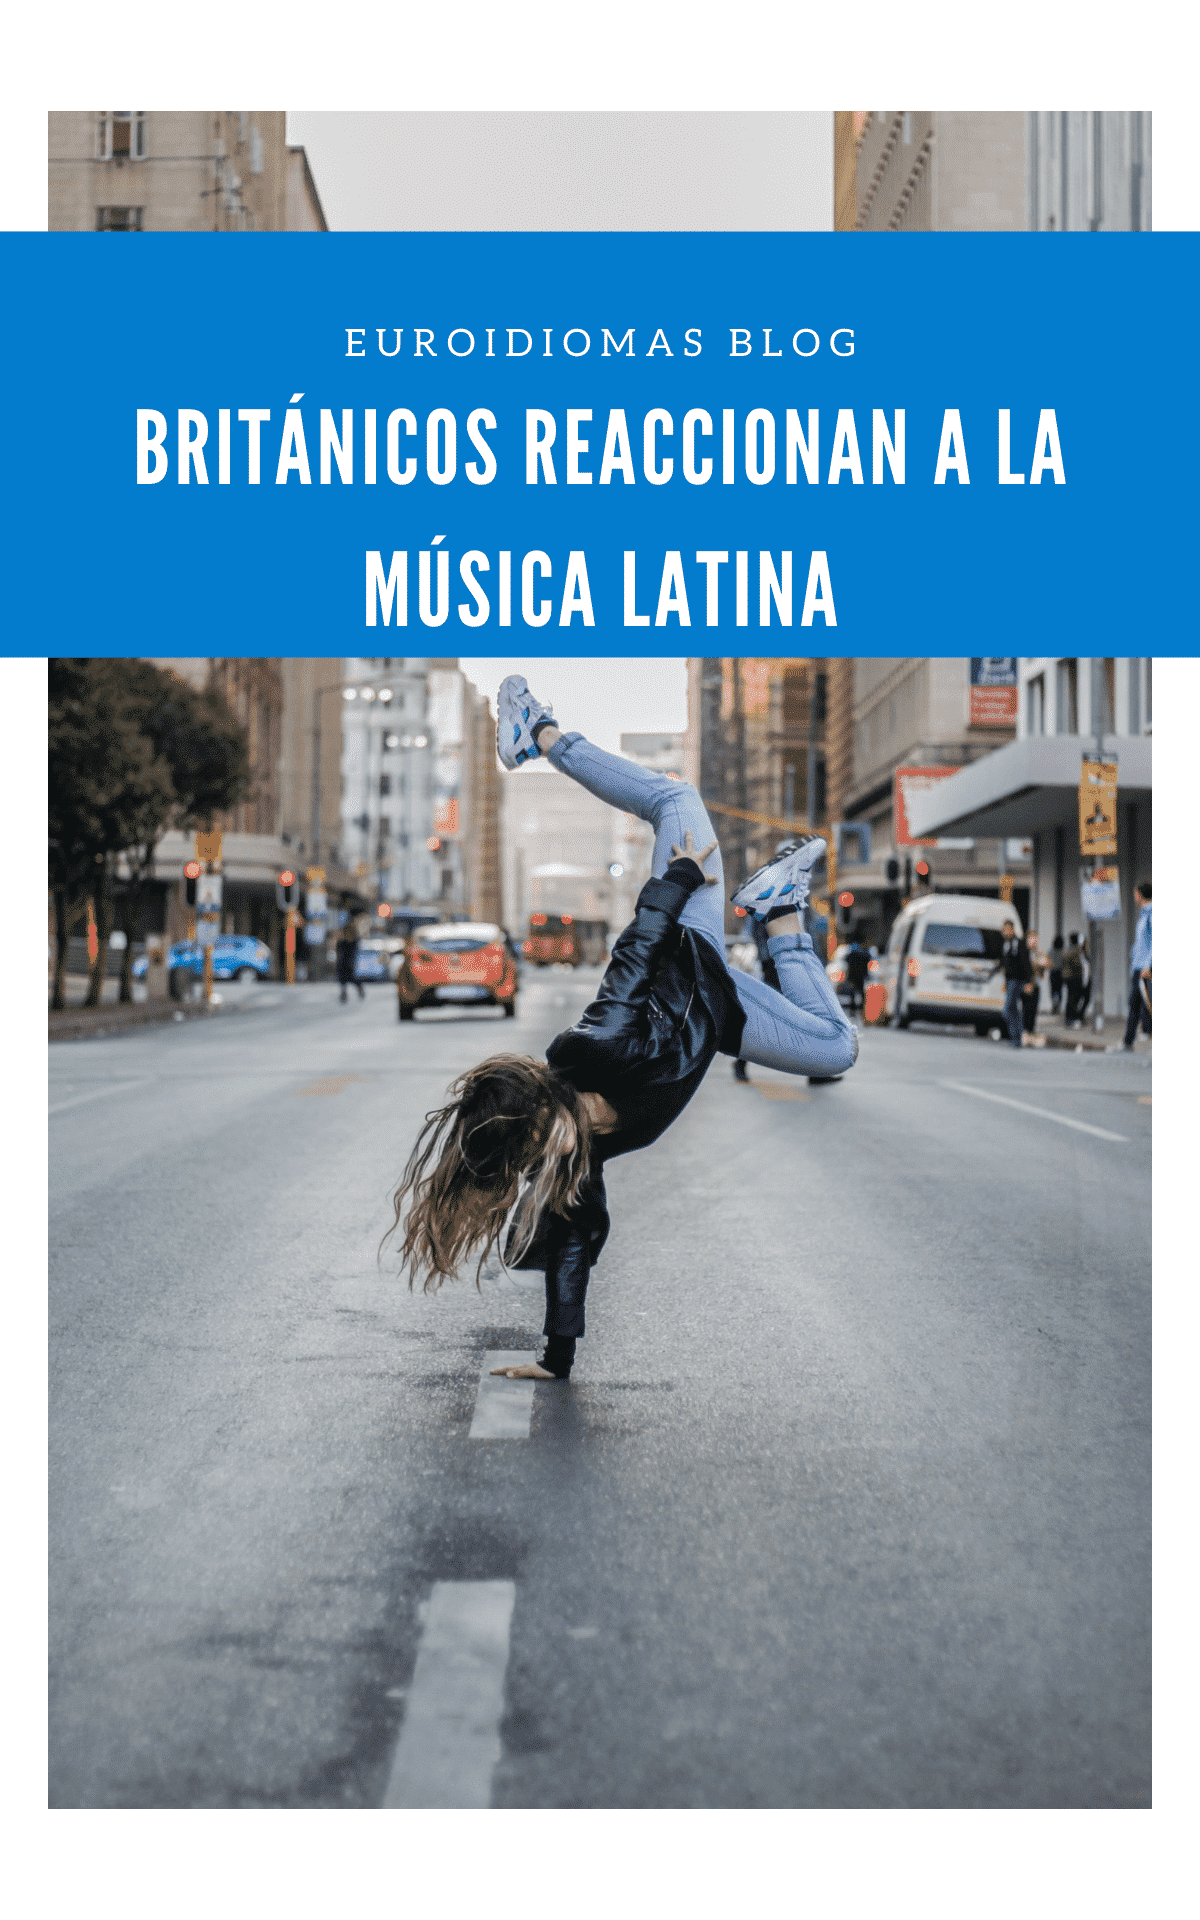 Descubre cómo los británicos bailan música latina